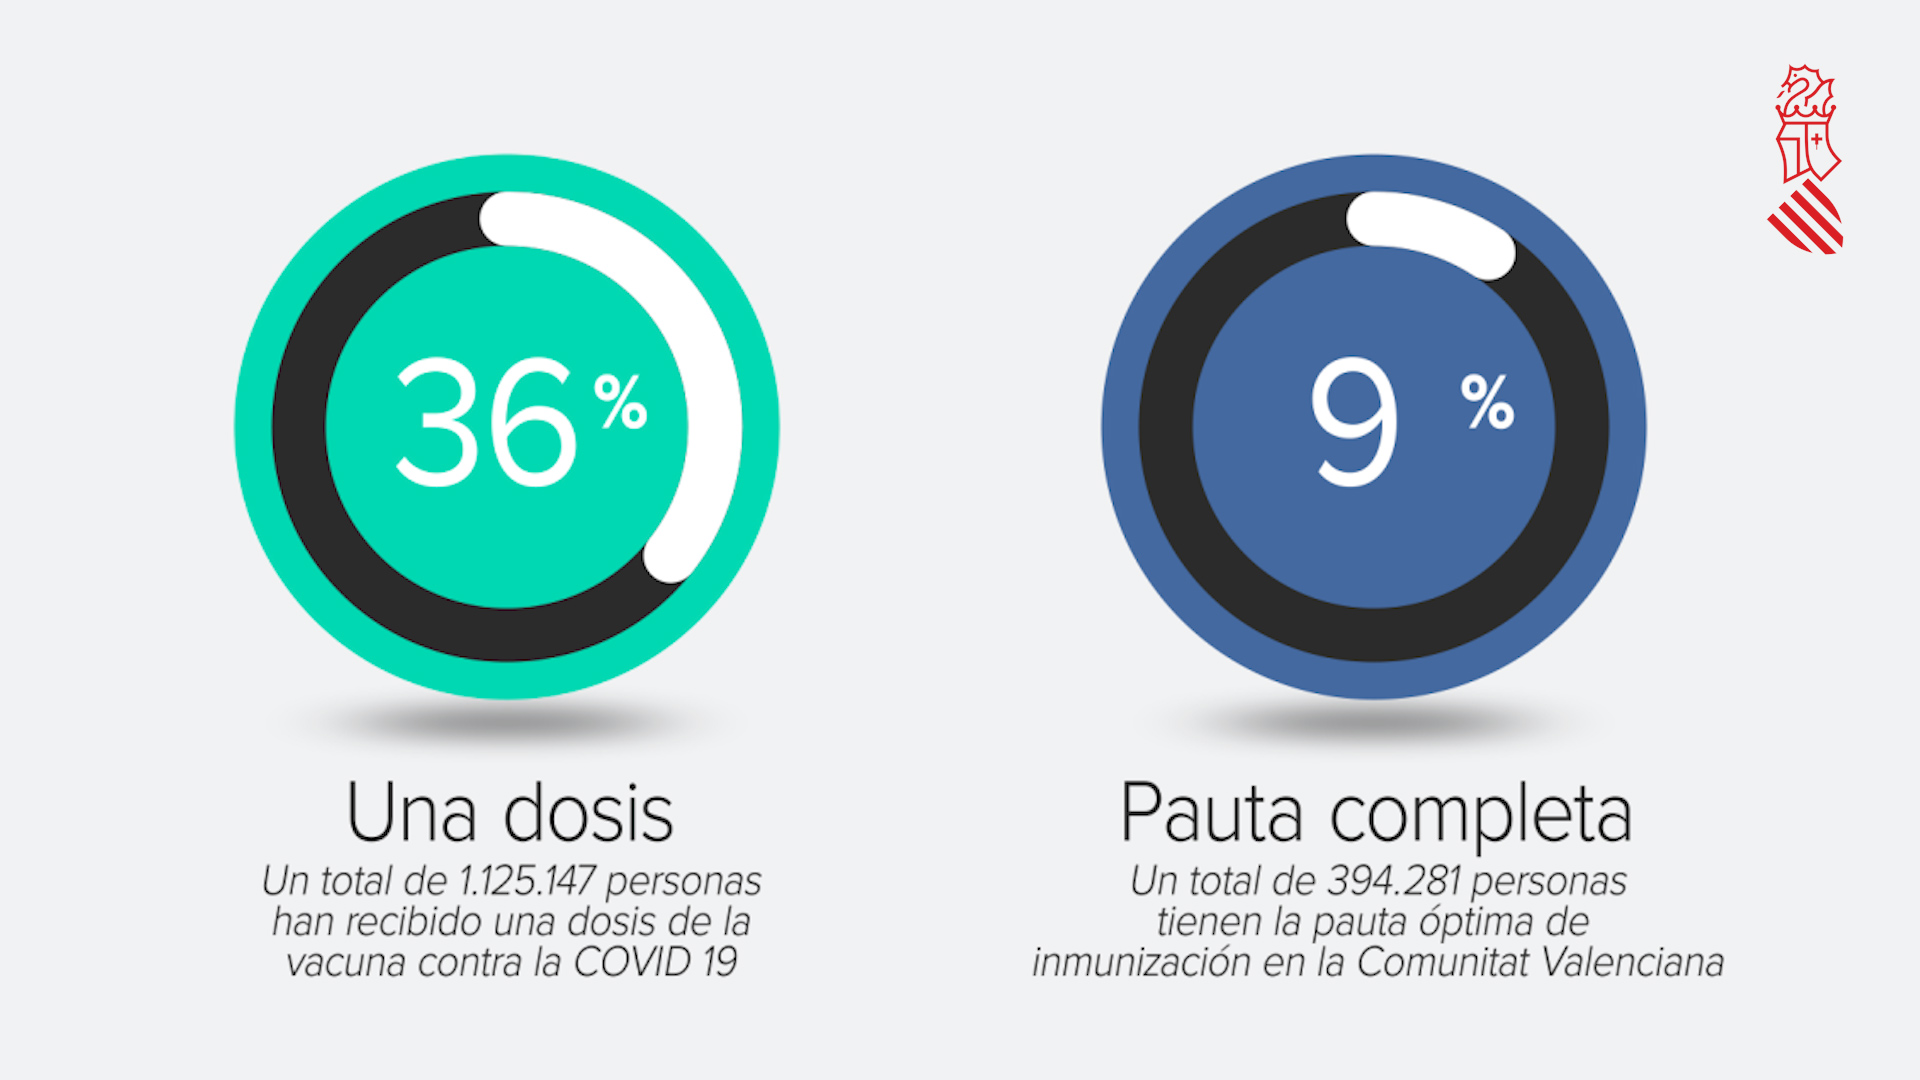 La Comunitat Valenciana ja compta amb més persones immunitzades per la vacuna contra la COVID-19 que contagiades